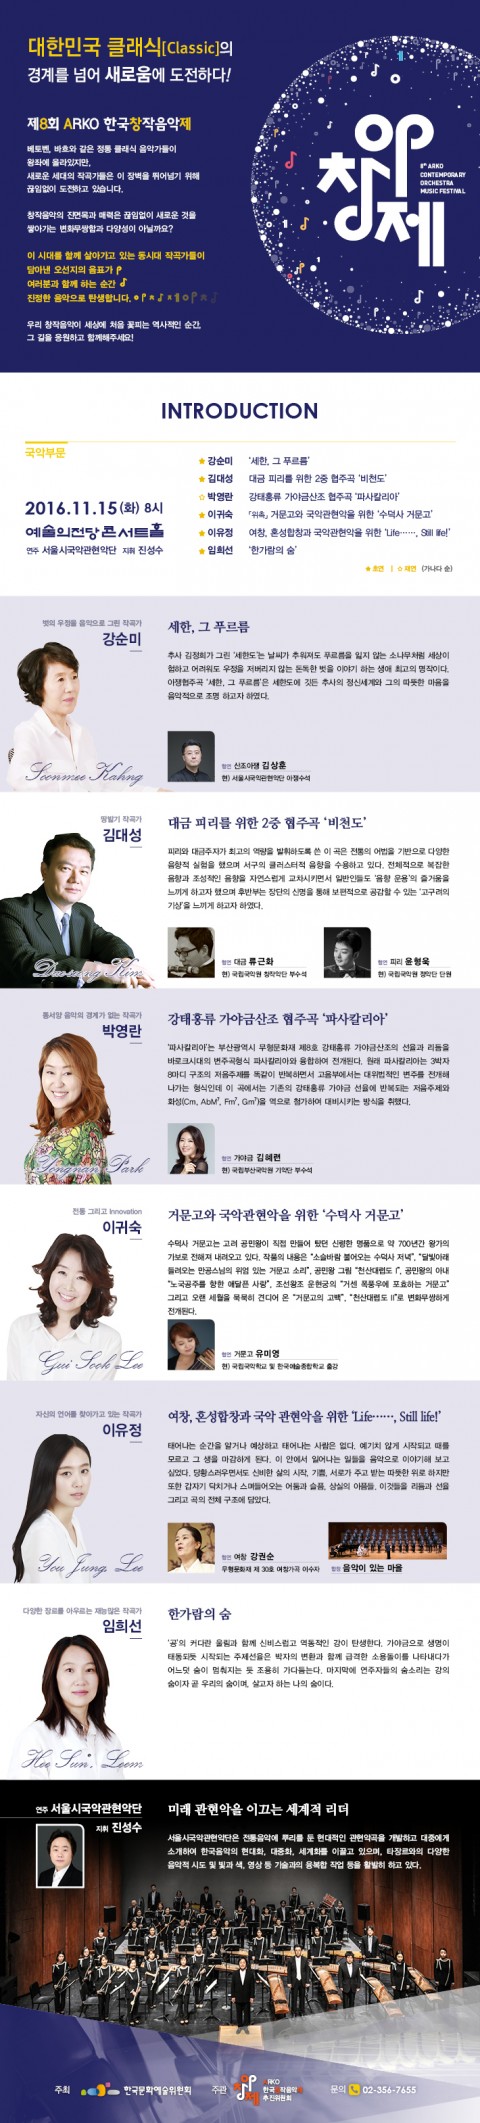 제8회 ARKO한국창작음악제 국악 부문 연주회가 15일 개최된다